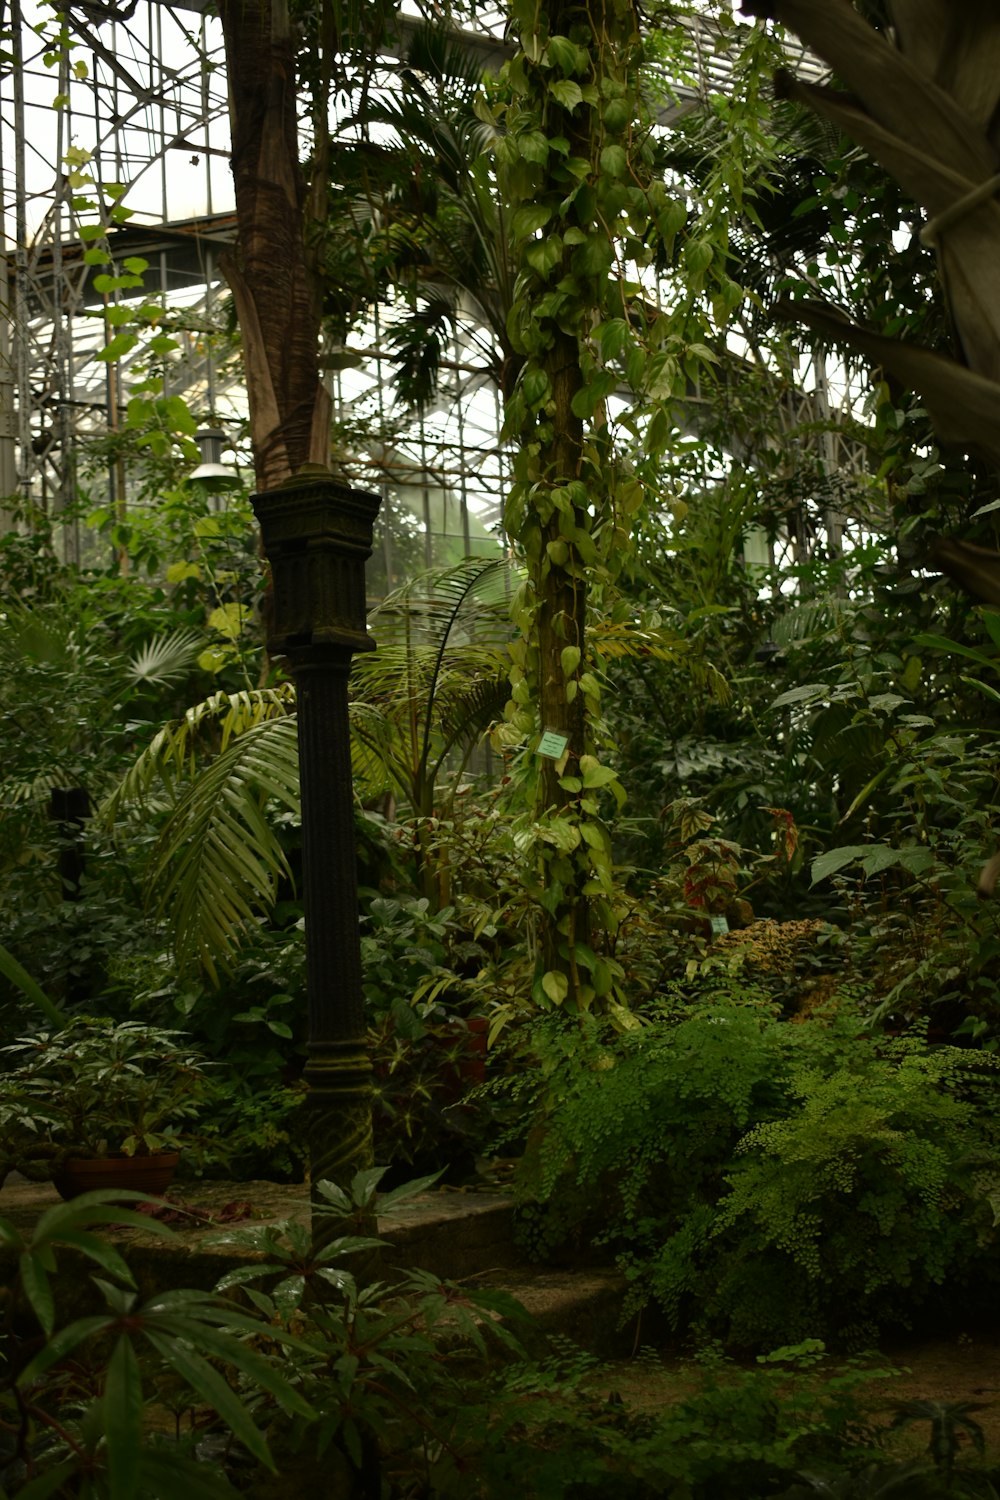 緑の植物に囲まれた黒い金属製の支柱